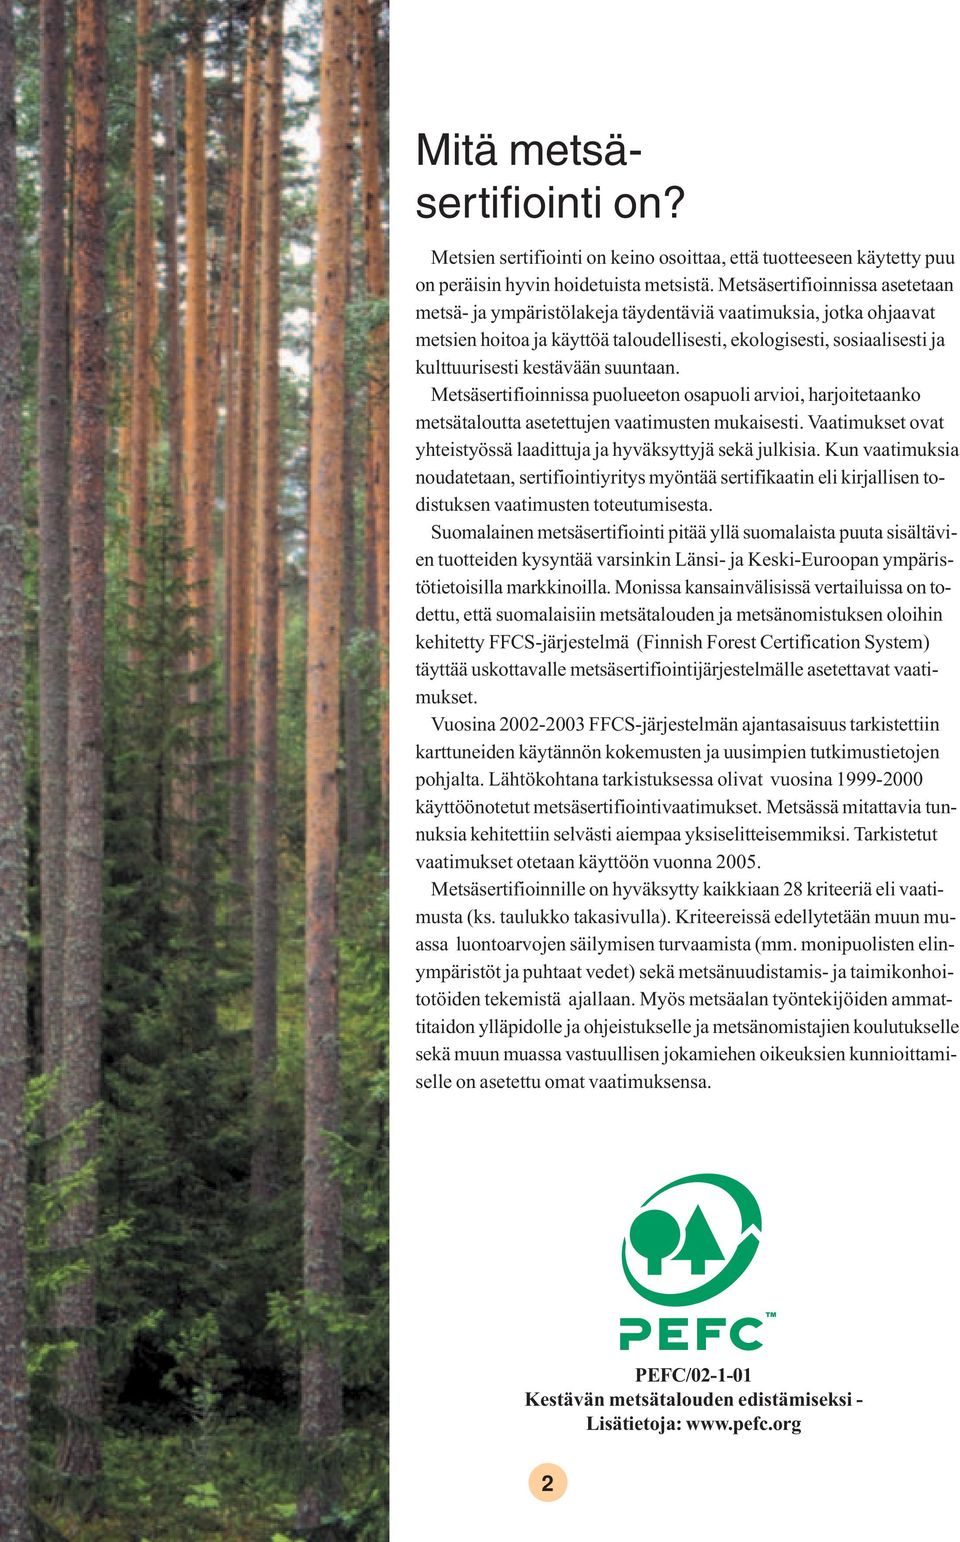 suuntaan. Metsäsertifioinnissa puolueeton osapuoli arvioi, harjoitetaanko metsätaloutta asetettujen vaatimusten mukaisesti. Vaatimukset ovat yhteistyössä laadittuja ja hyväksyttyjä sekä julkisia.